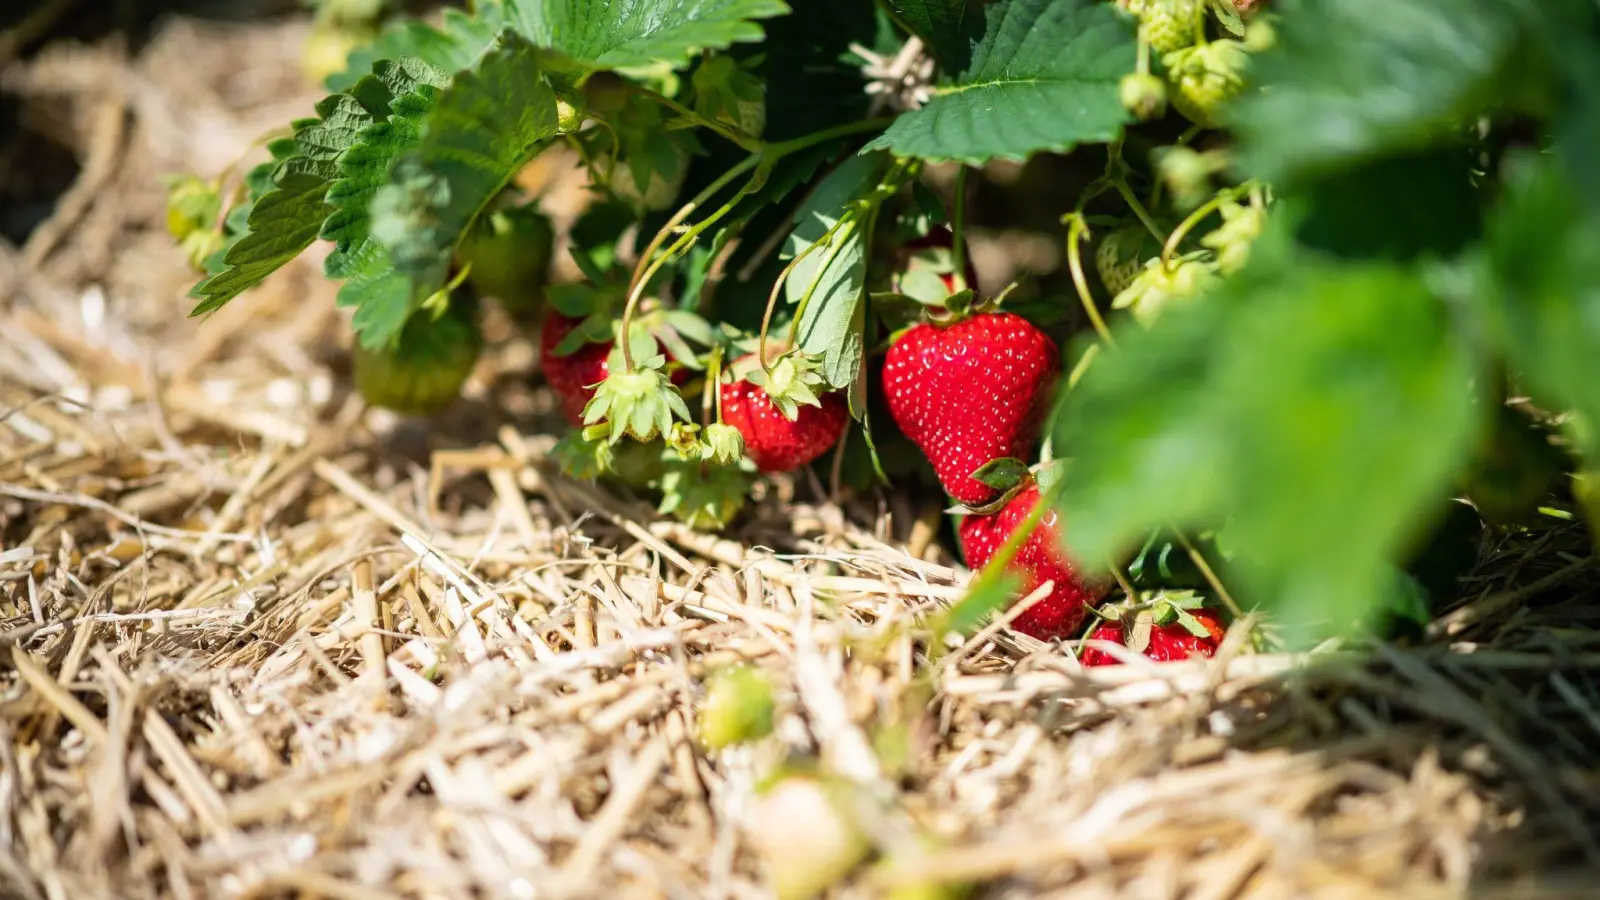 Eine Lage Stroh um die Erdbeeren hat viele Vorteile für die Pflanze. (Foto: Guido Kirchner/dpa/dpa-tmn)